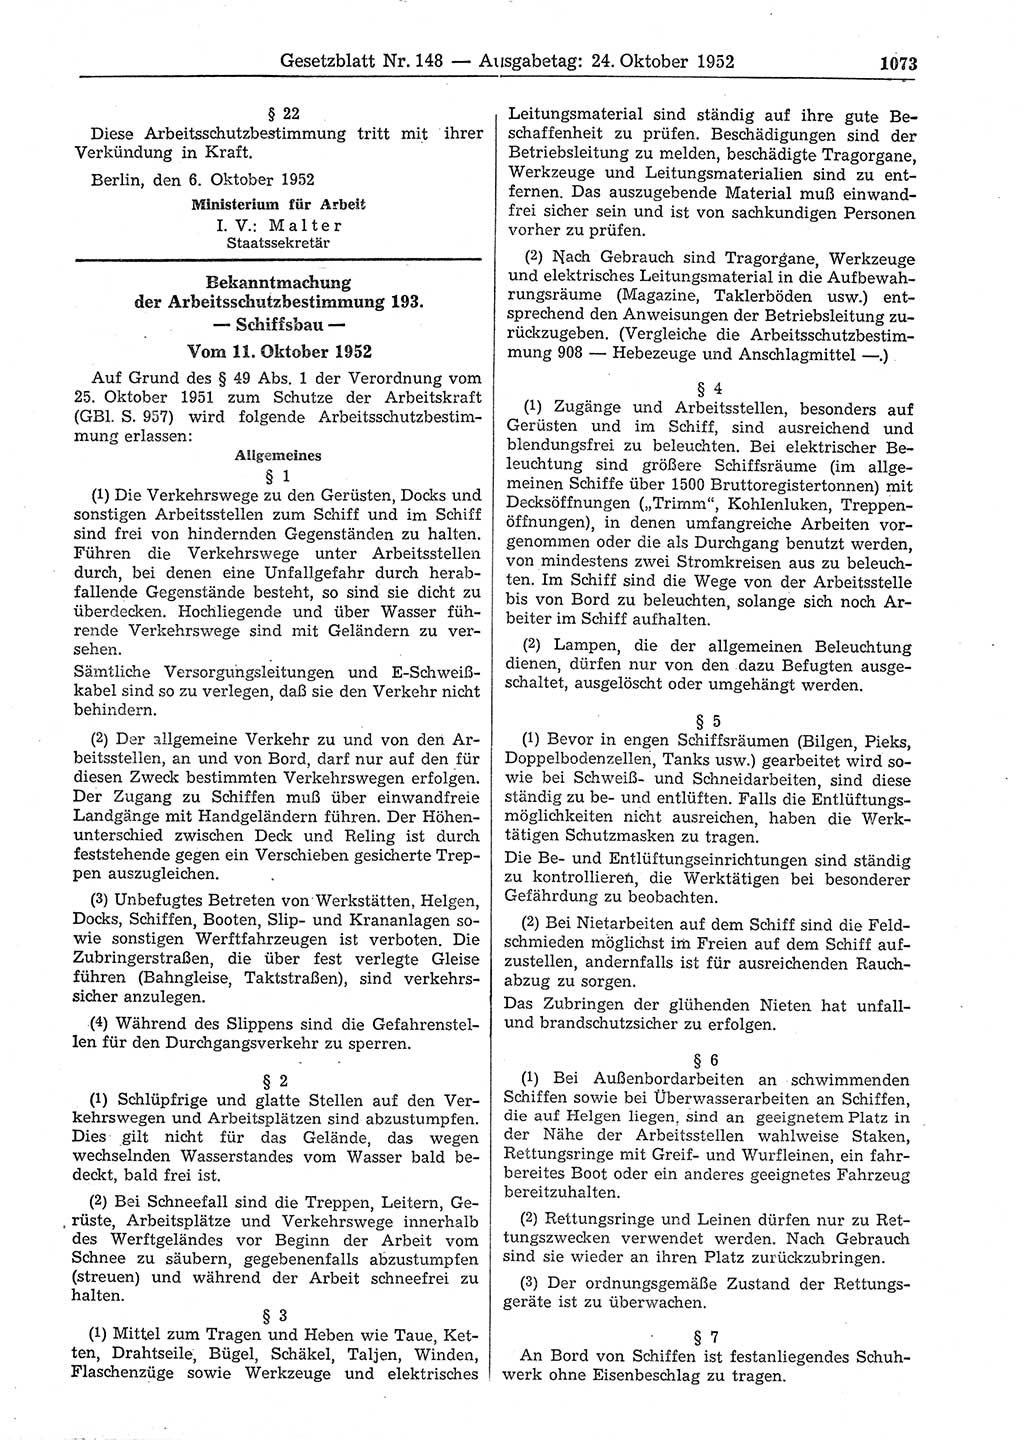 Gesetzblatt (GBl.) der Deutschen Demokratischen Republik (DDR) 1952, Seite 1073 (GBl. DDR 1952, S. 1073)